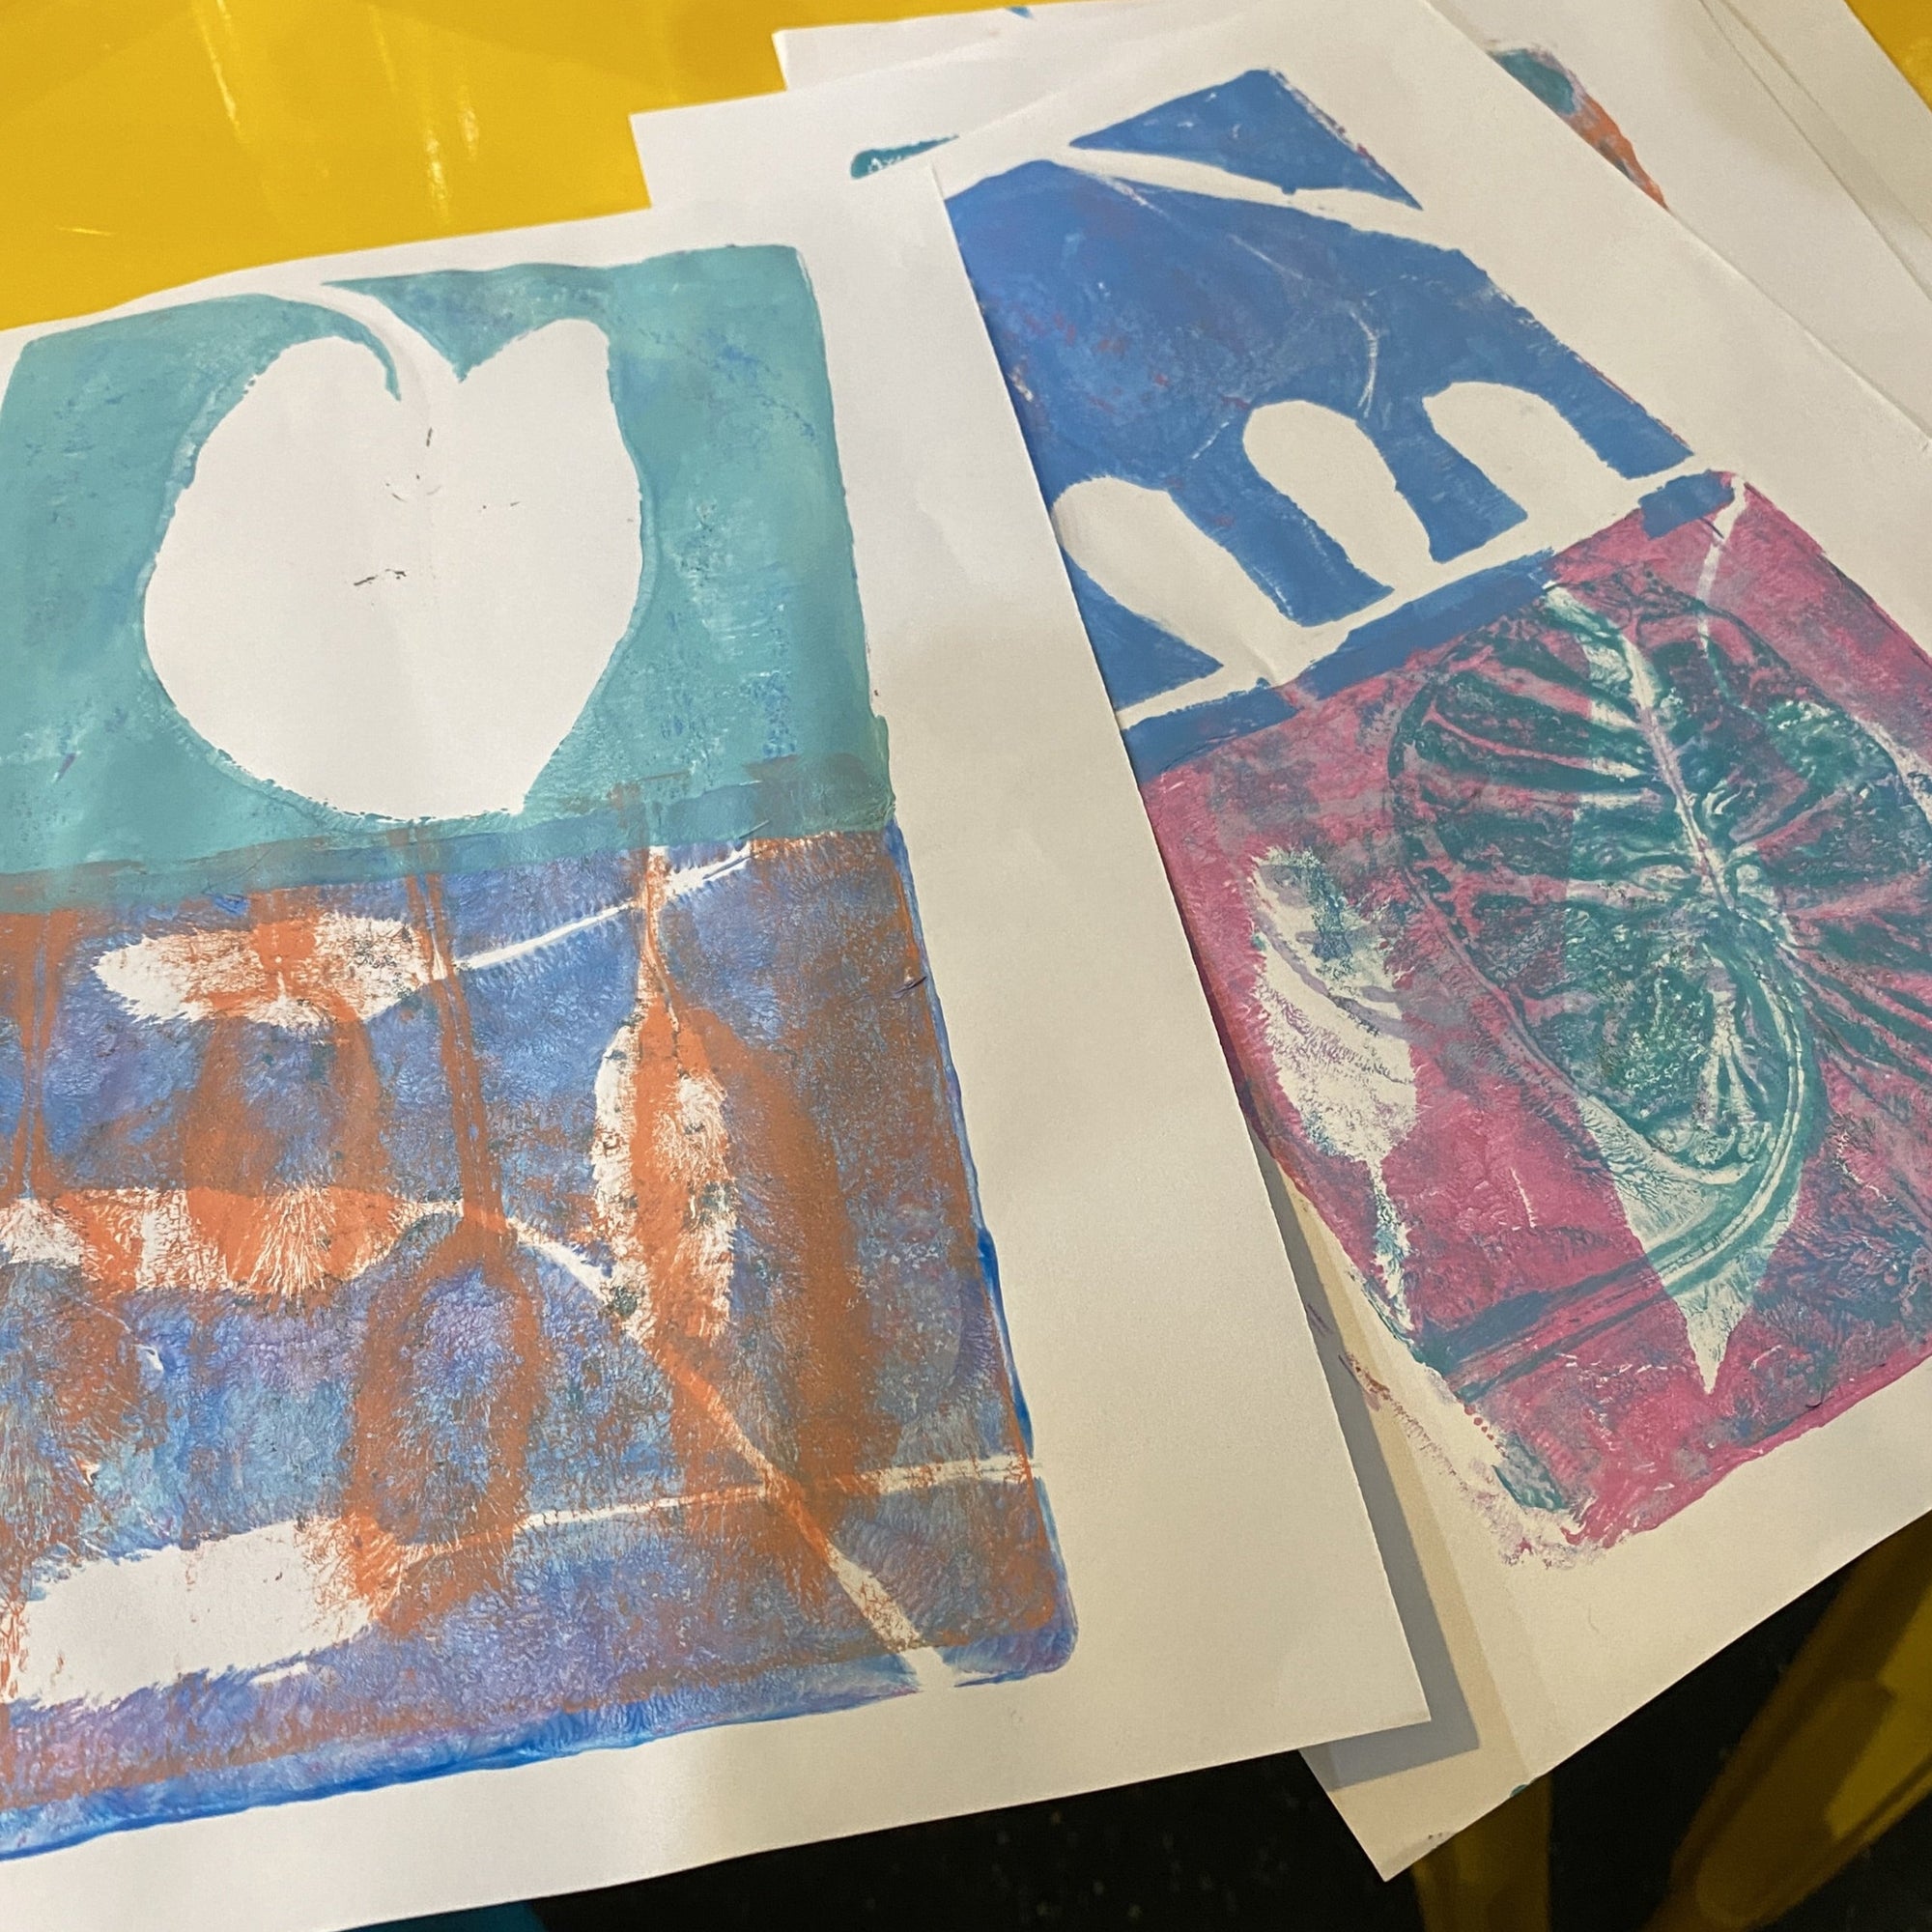 February Fun! Homeschool Gelli Plate Printmaking Workshop: Ages 8 - 12